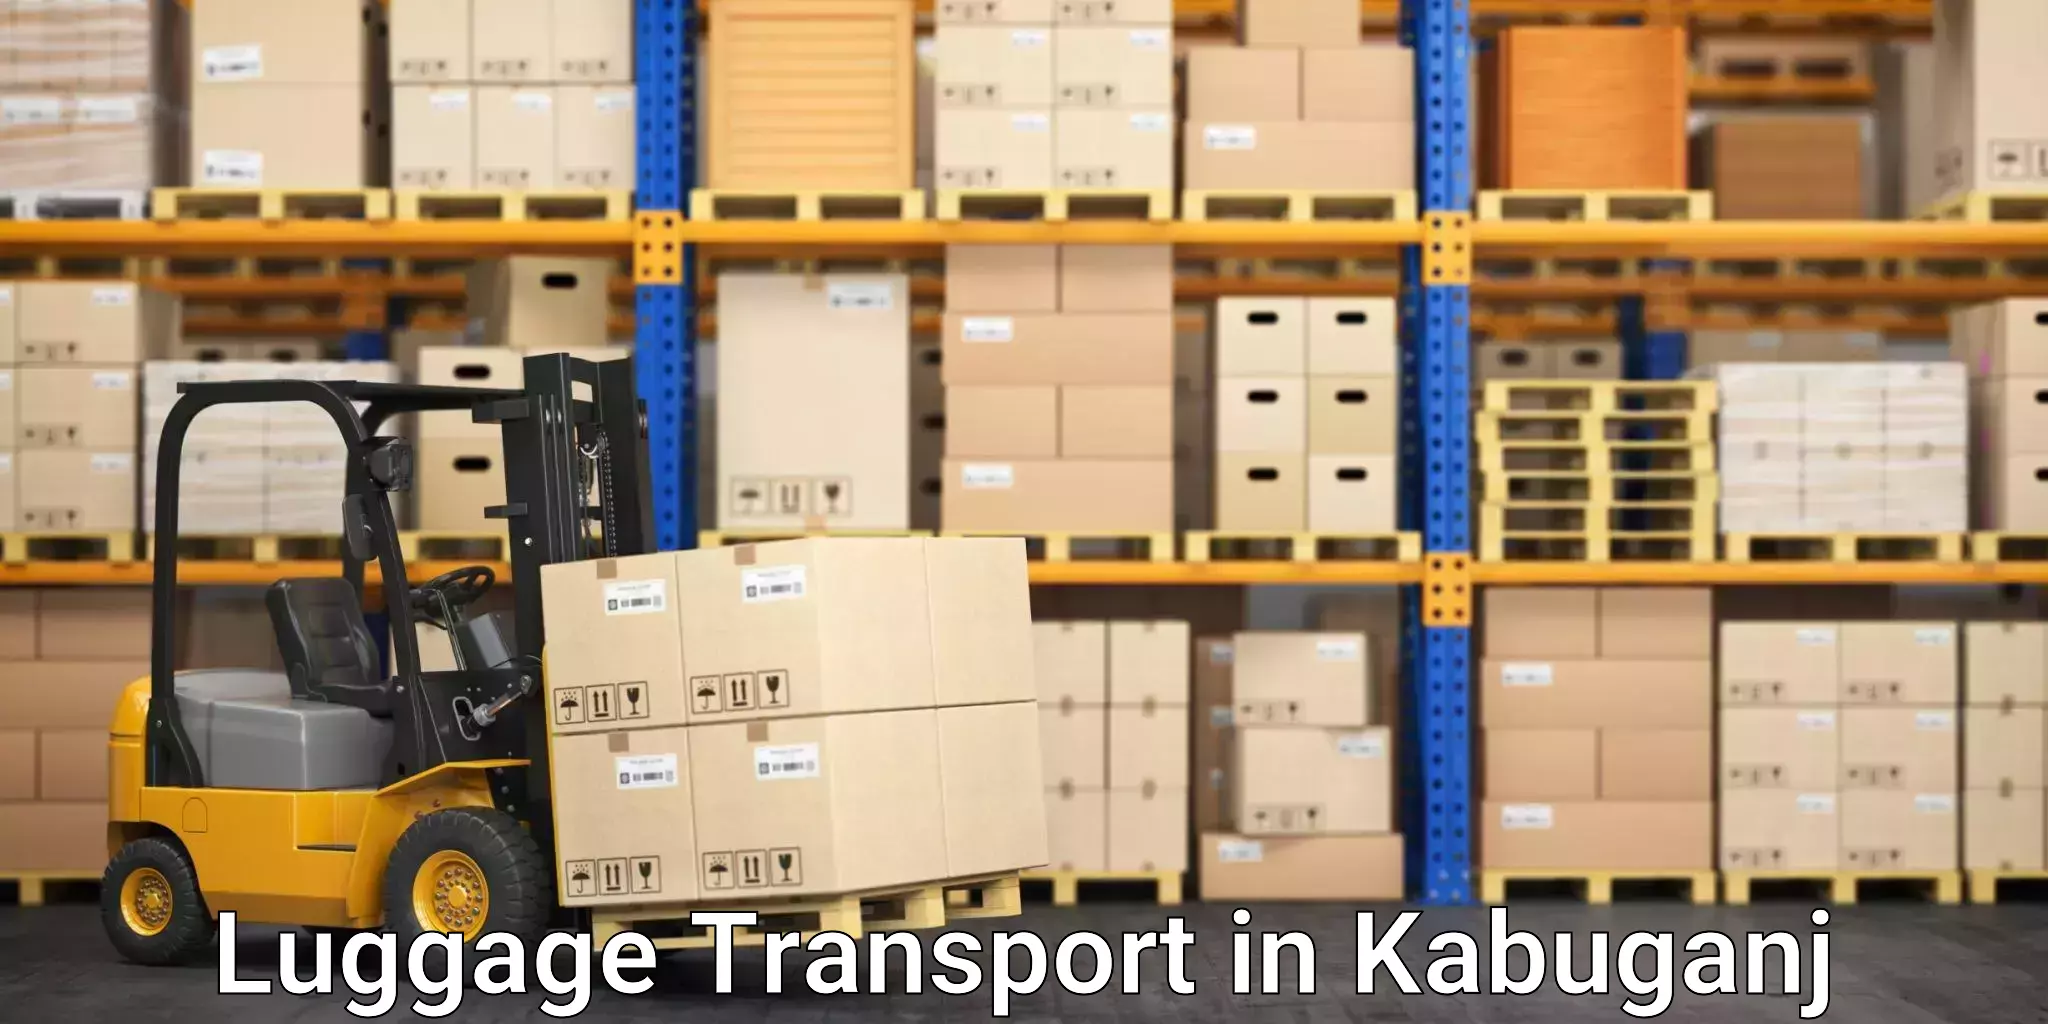 Luggage transport pricing in Kabuganj